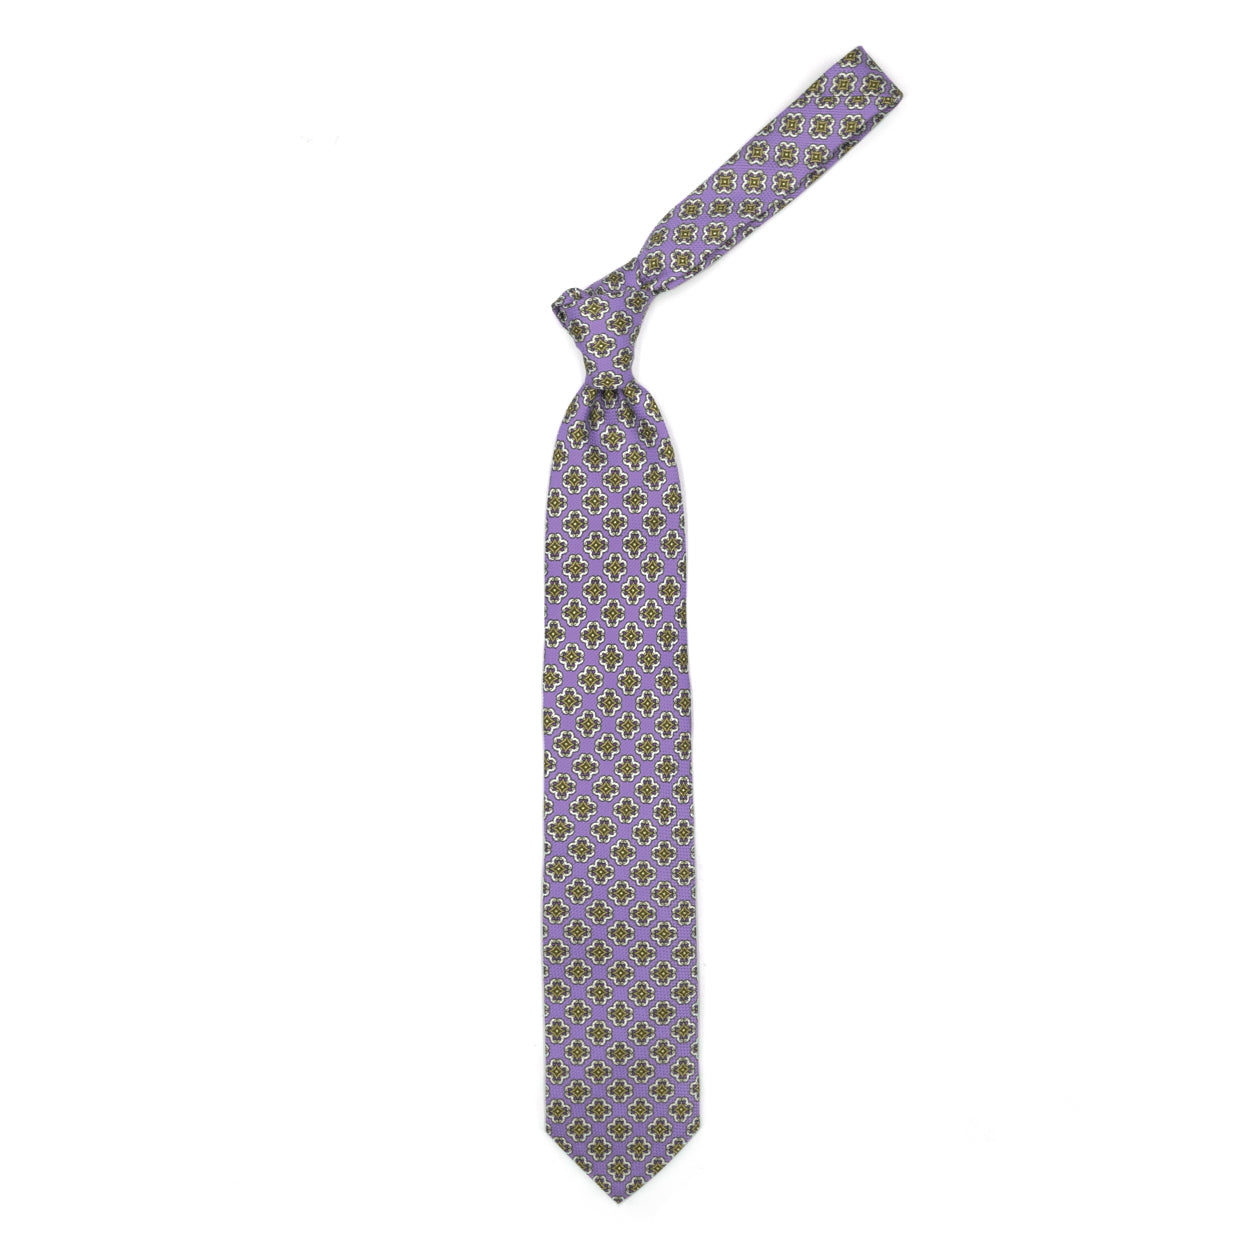 Cravatta lilla con medaglioni colorati